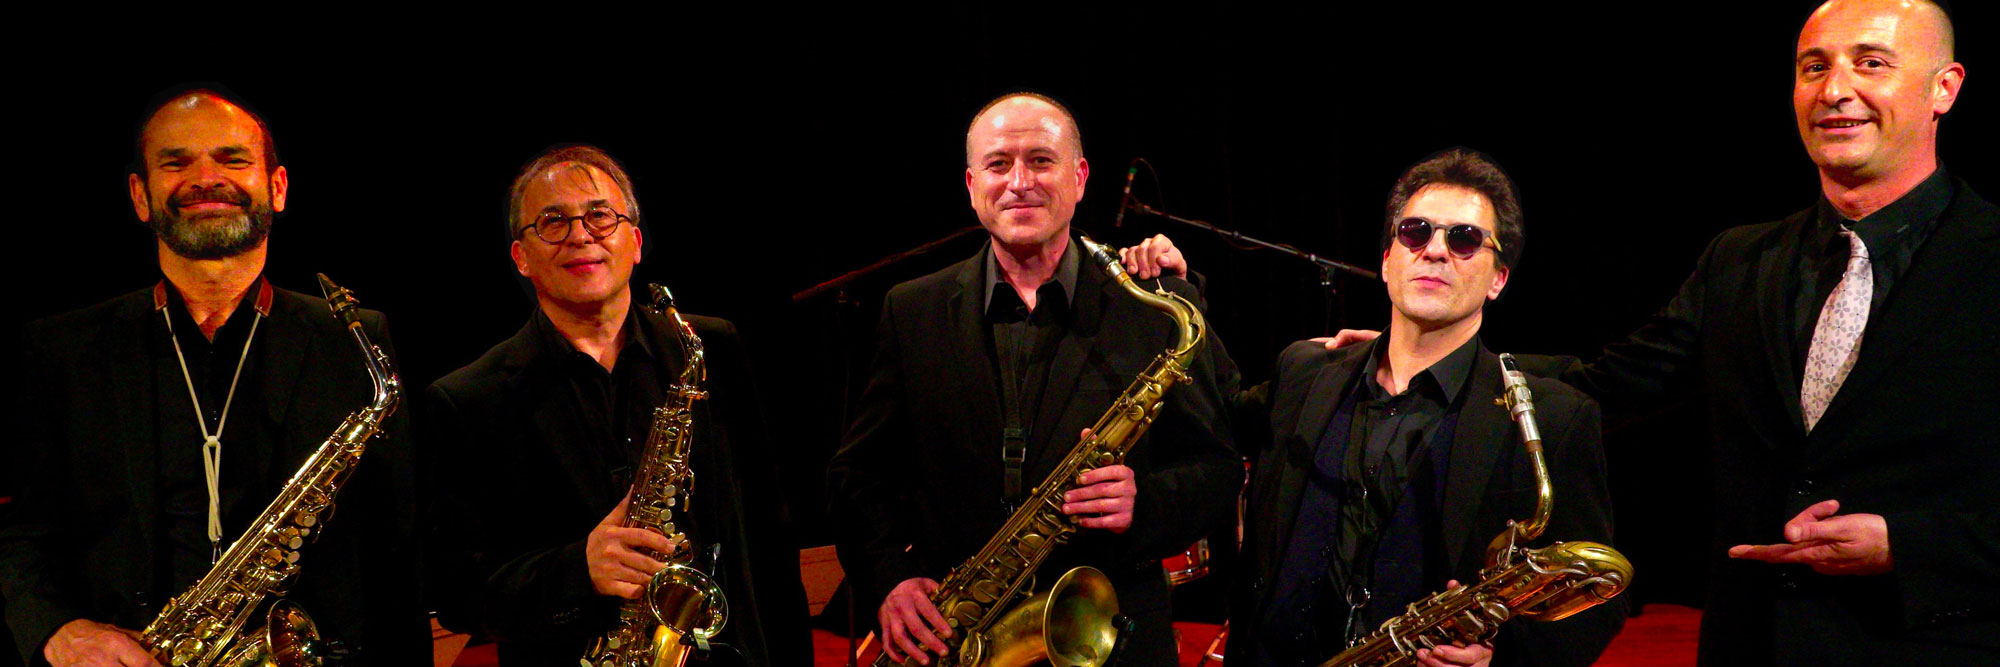 Metropolis Sax, groupe de musique Saxophoniste en représentation à Bouches du Rhône - photo de couverture